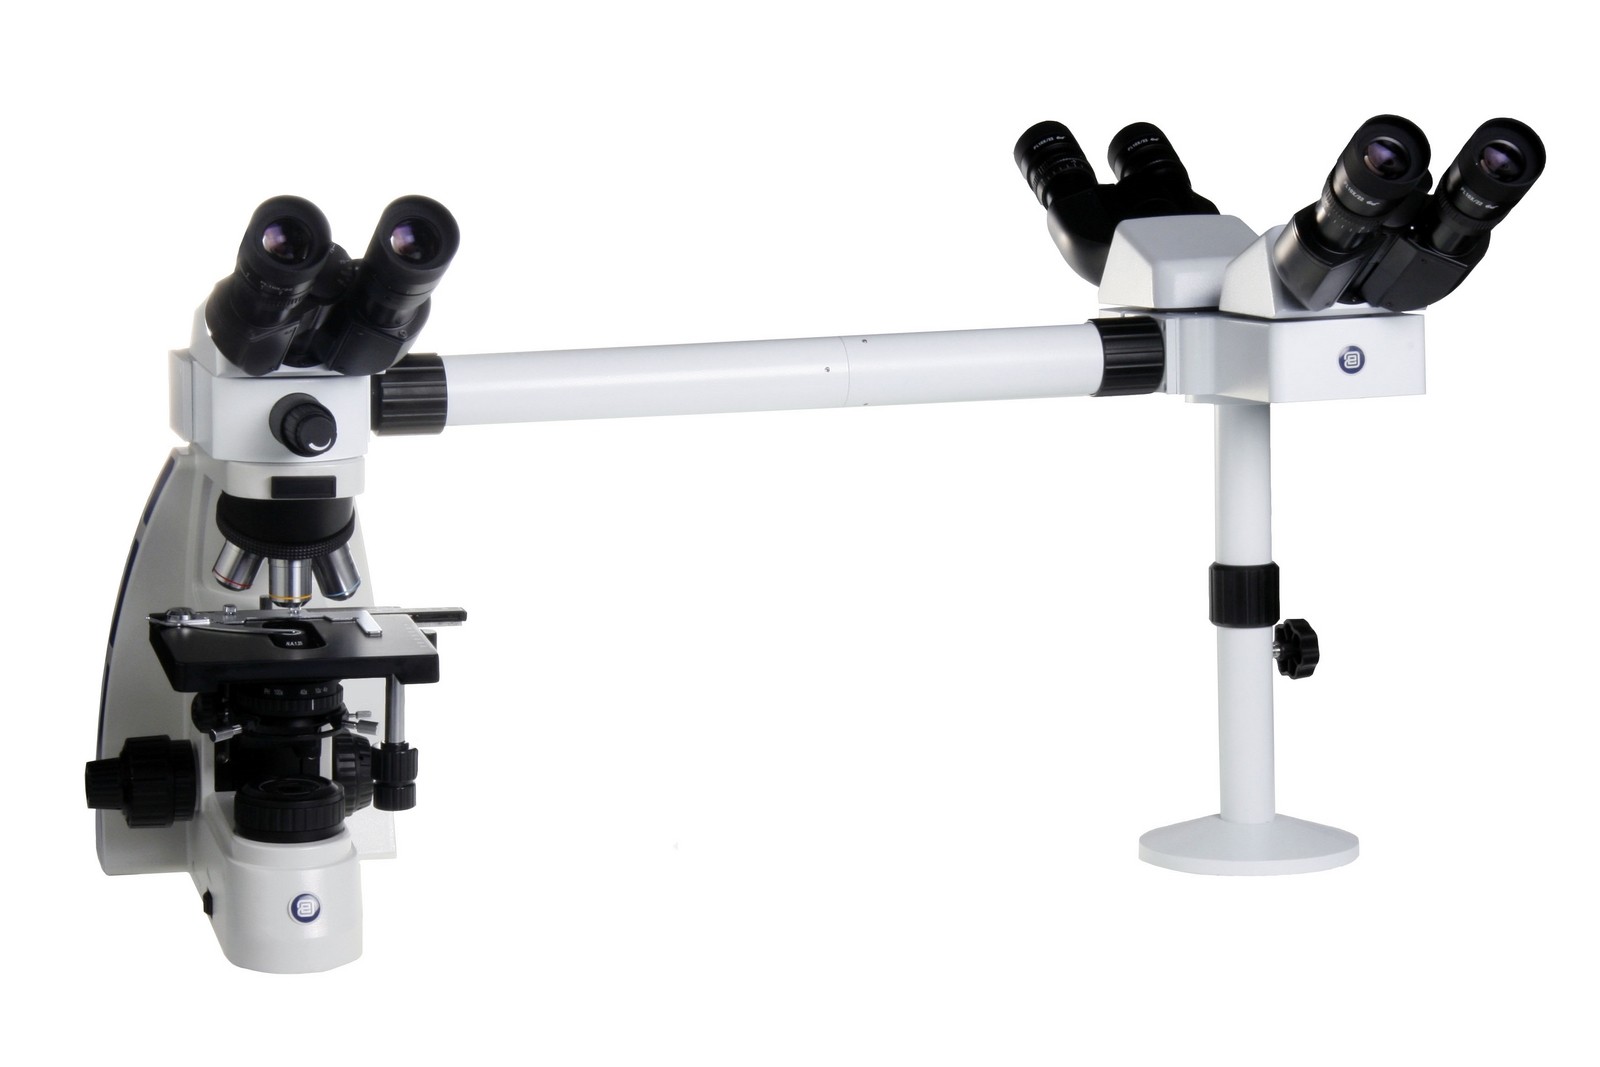 Microscopio Multicabezal 3 de discusion